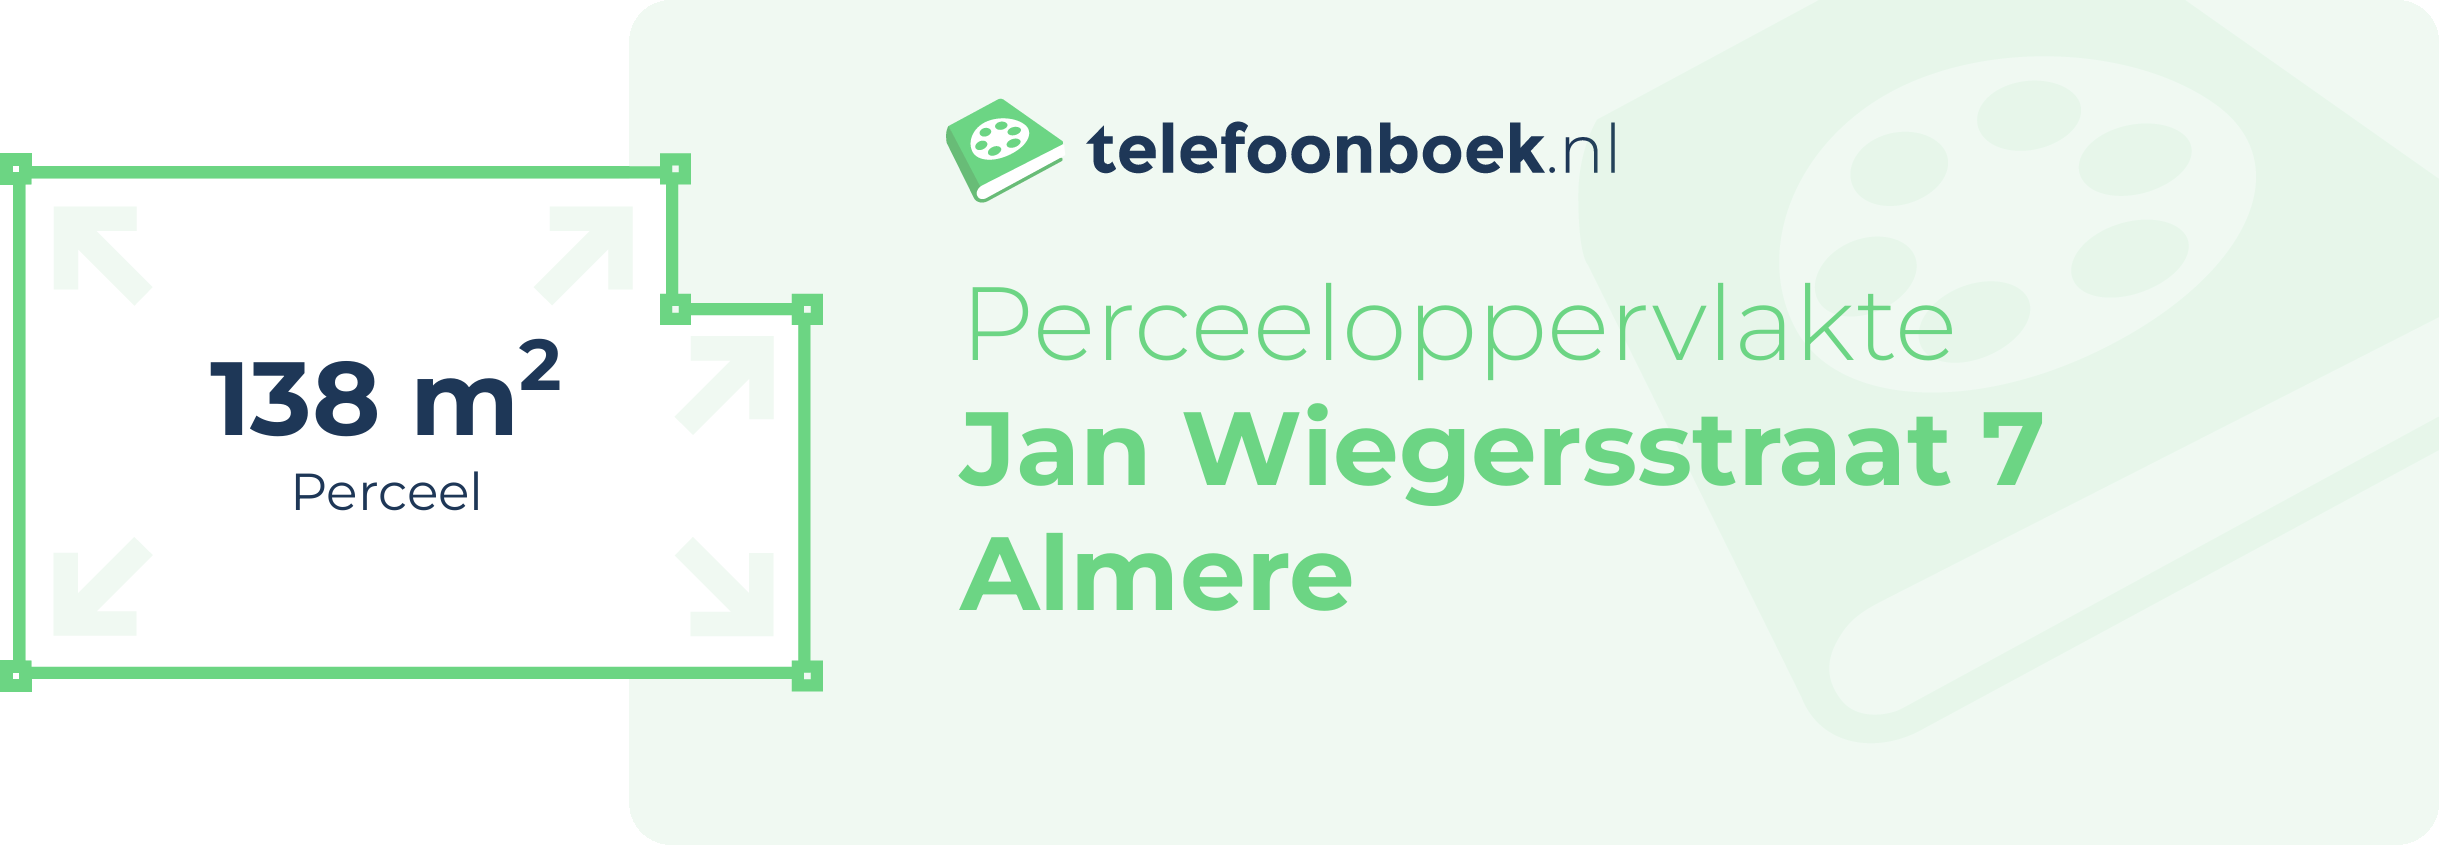 Perceeloppervlakte Jan Wiegersstraat 7 Almere